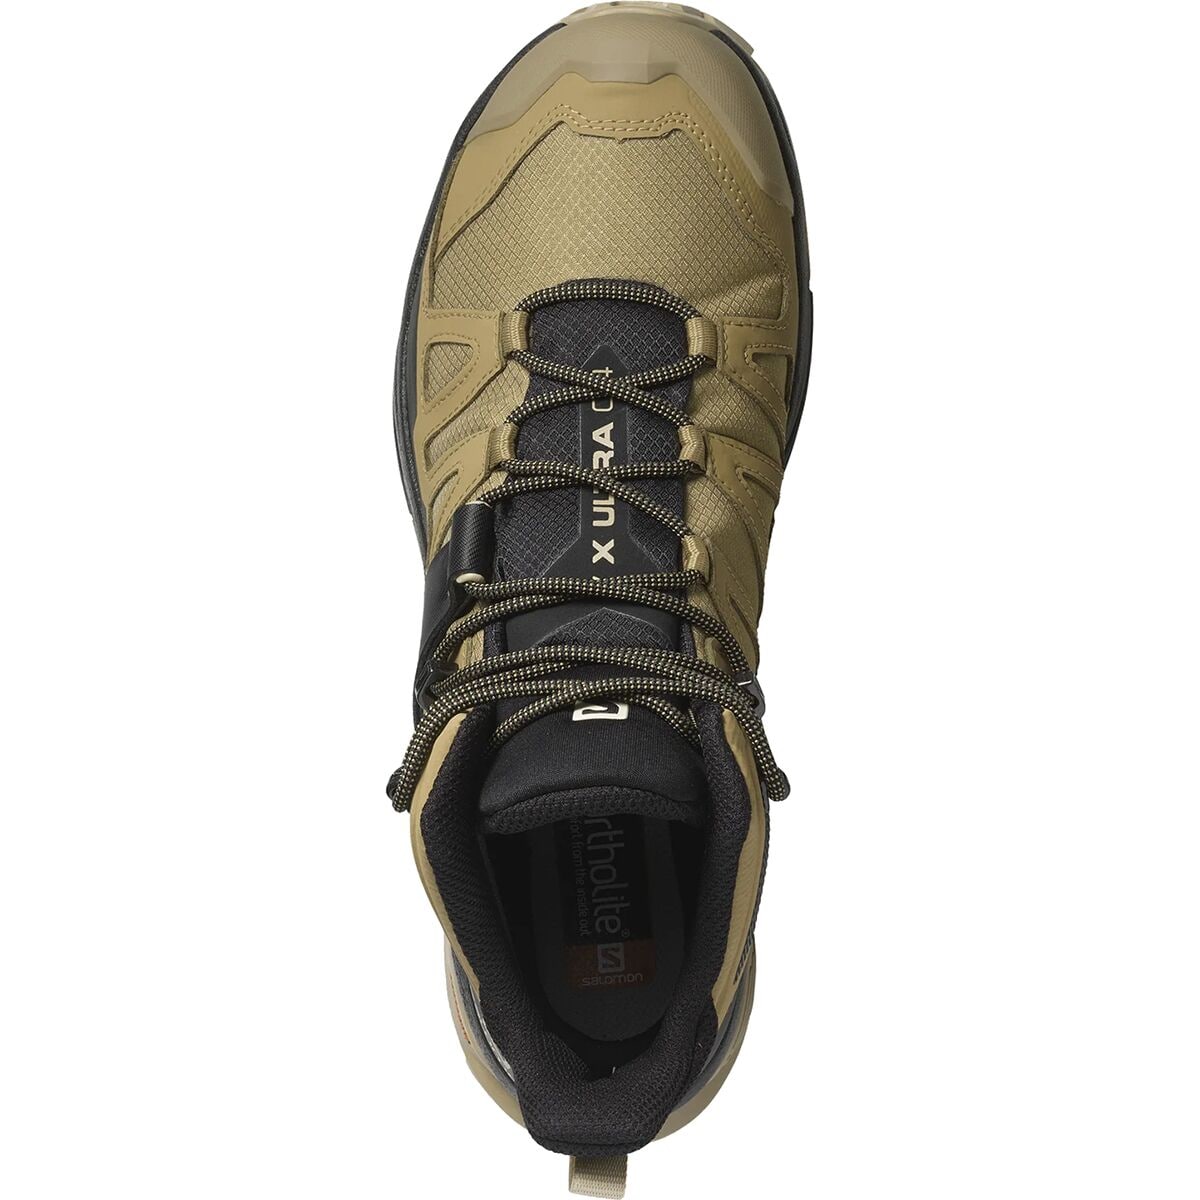 Salomon X Ultra 4 Mid GTX Hiking Shoe - Men's - Footwear